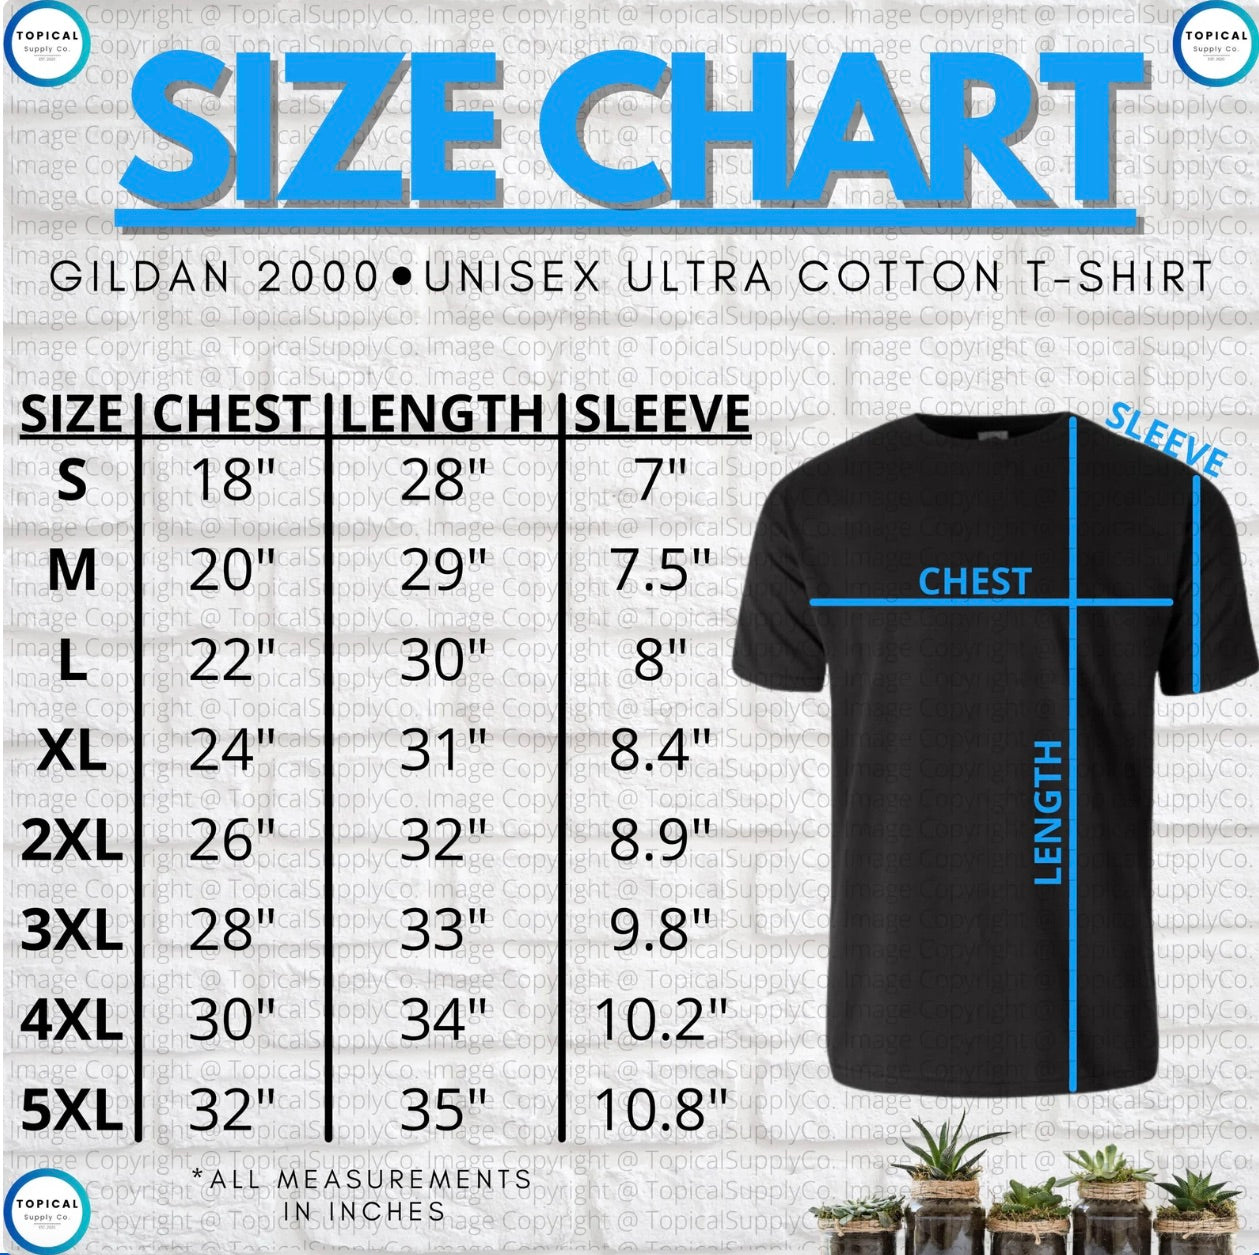 Gildan 2000 - Unisex Ultra Cotton T-Shirt